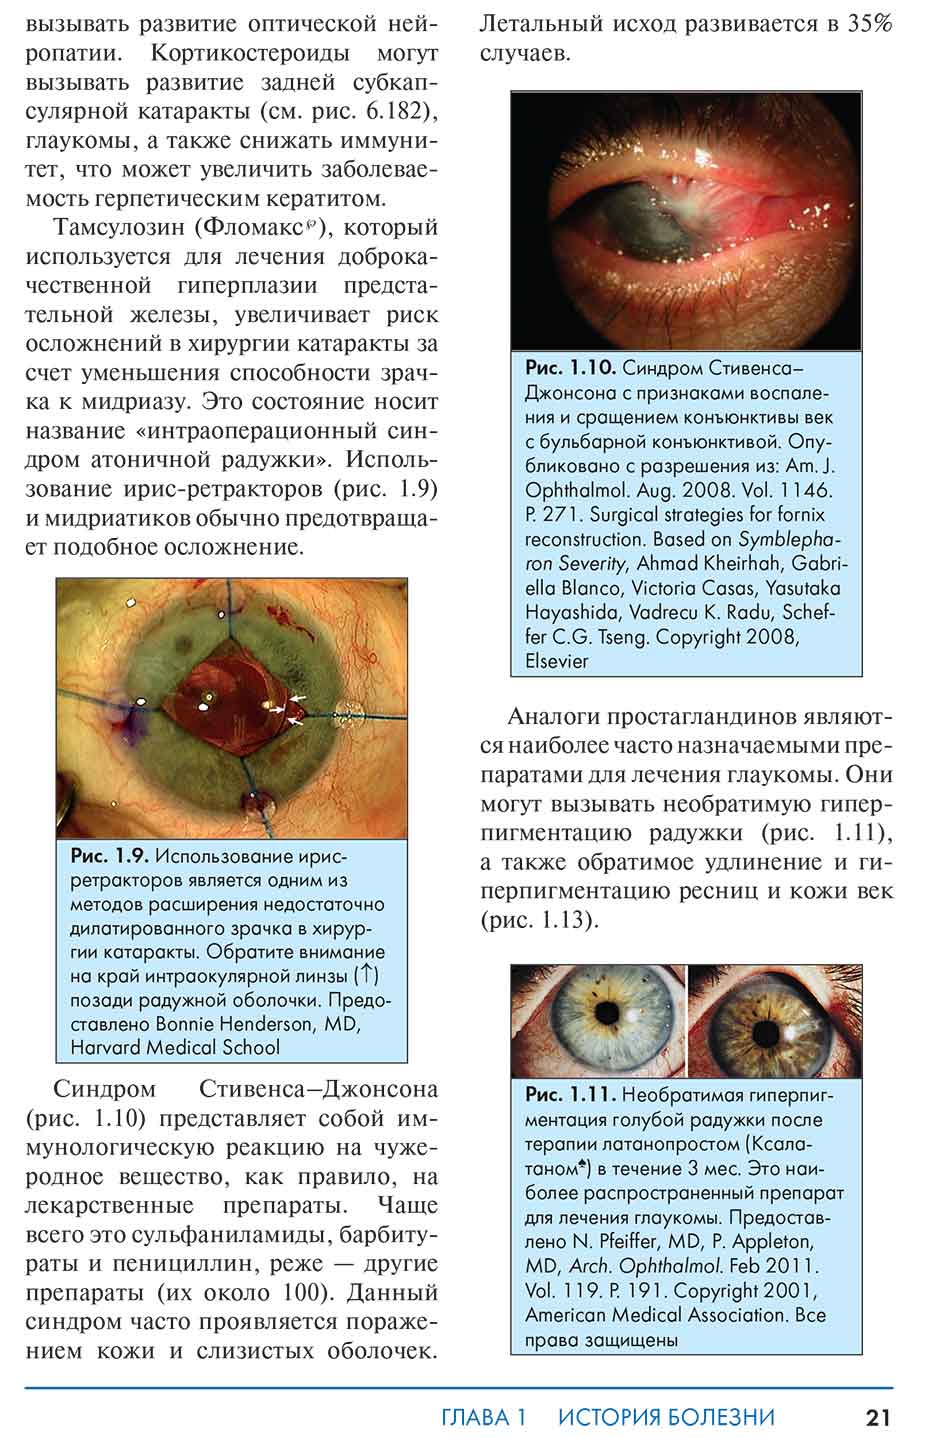 Рис. 1.9. Использование ирис-ретракторов является одним из методов расширения недостаточно дилатированного зрачка в хирургии катаракты